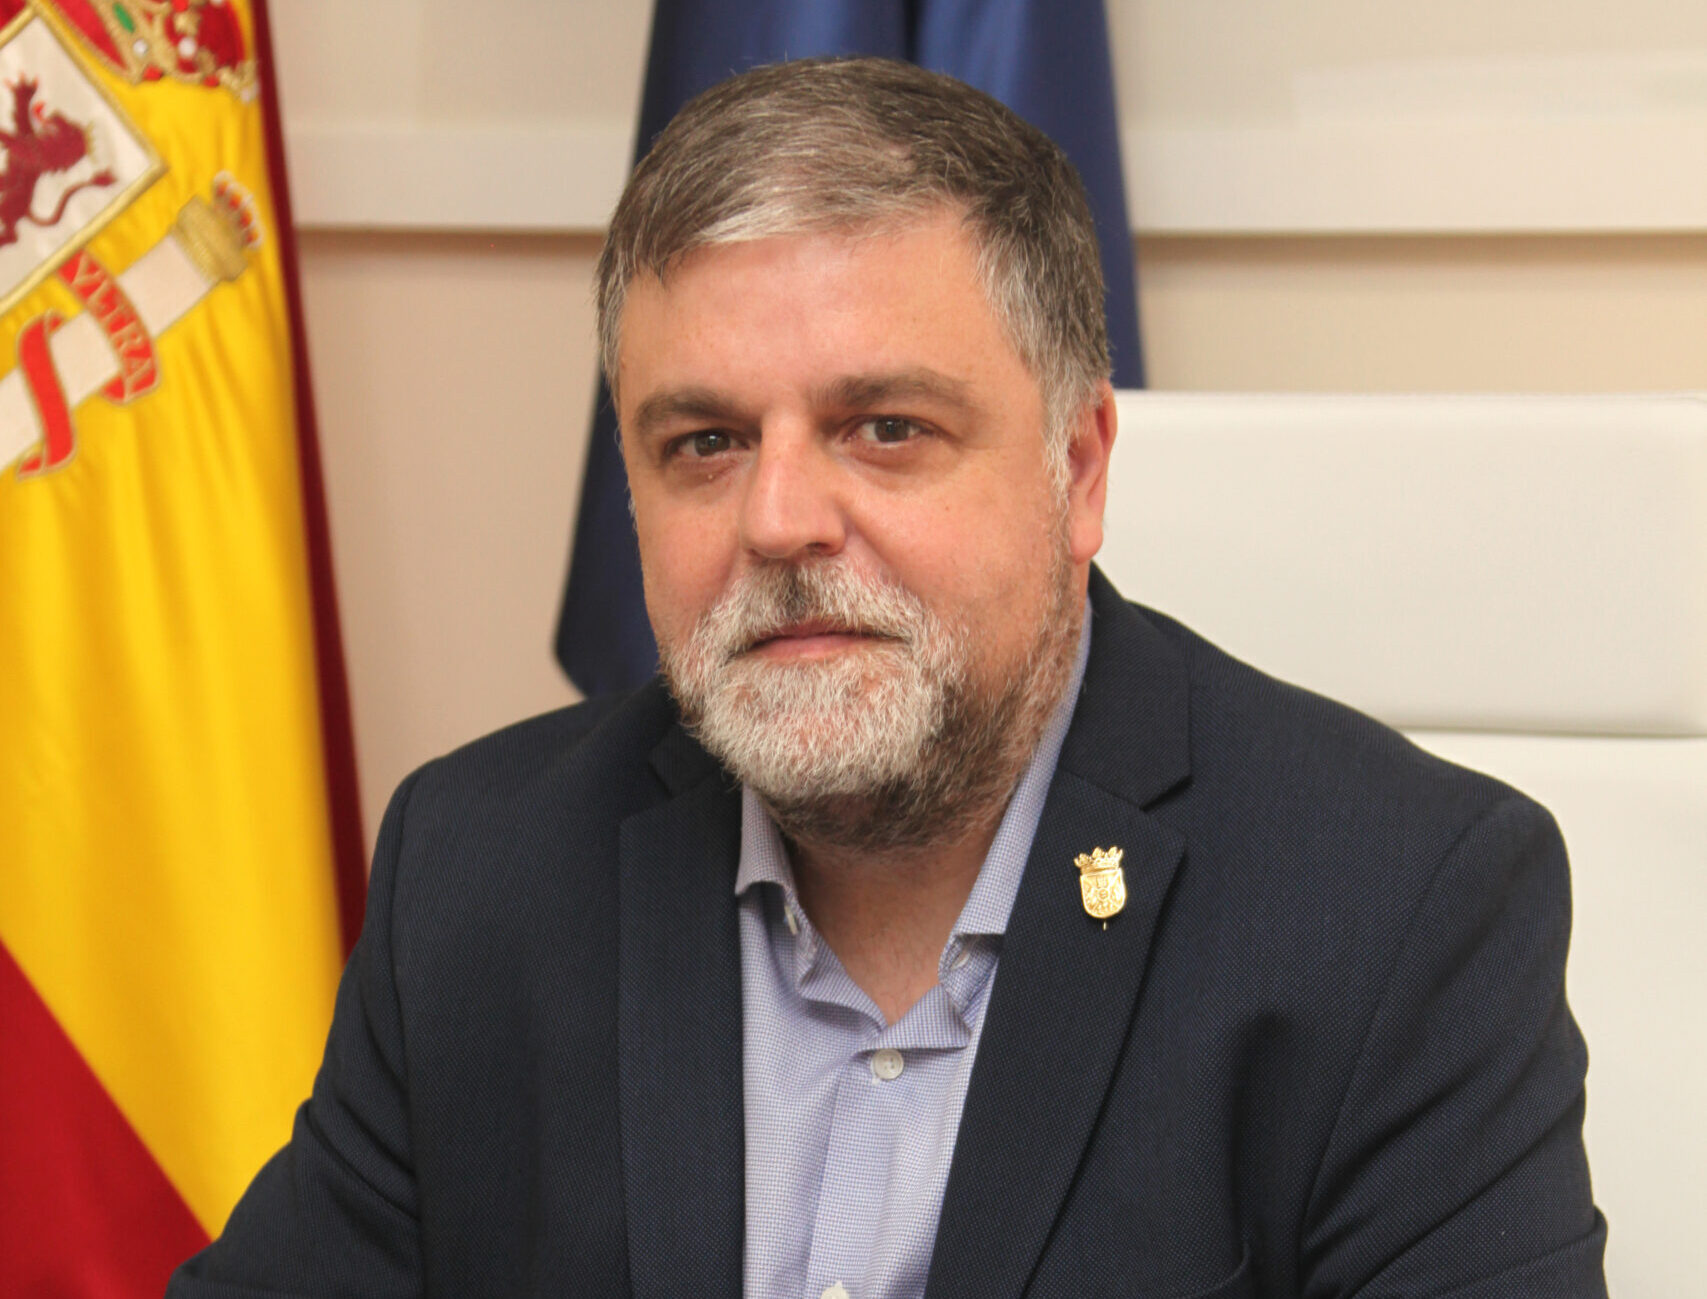 Fulgencio Cerdán| Alcalde de Villena  “Queremos mejorar el servicio a la ciudadanía”